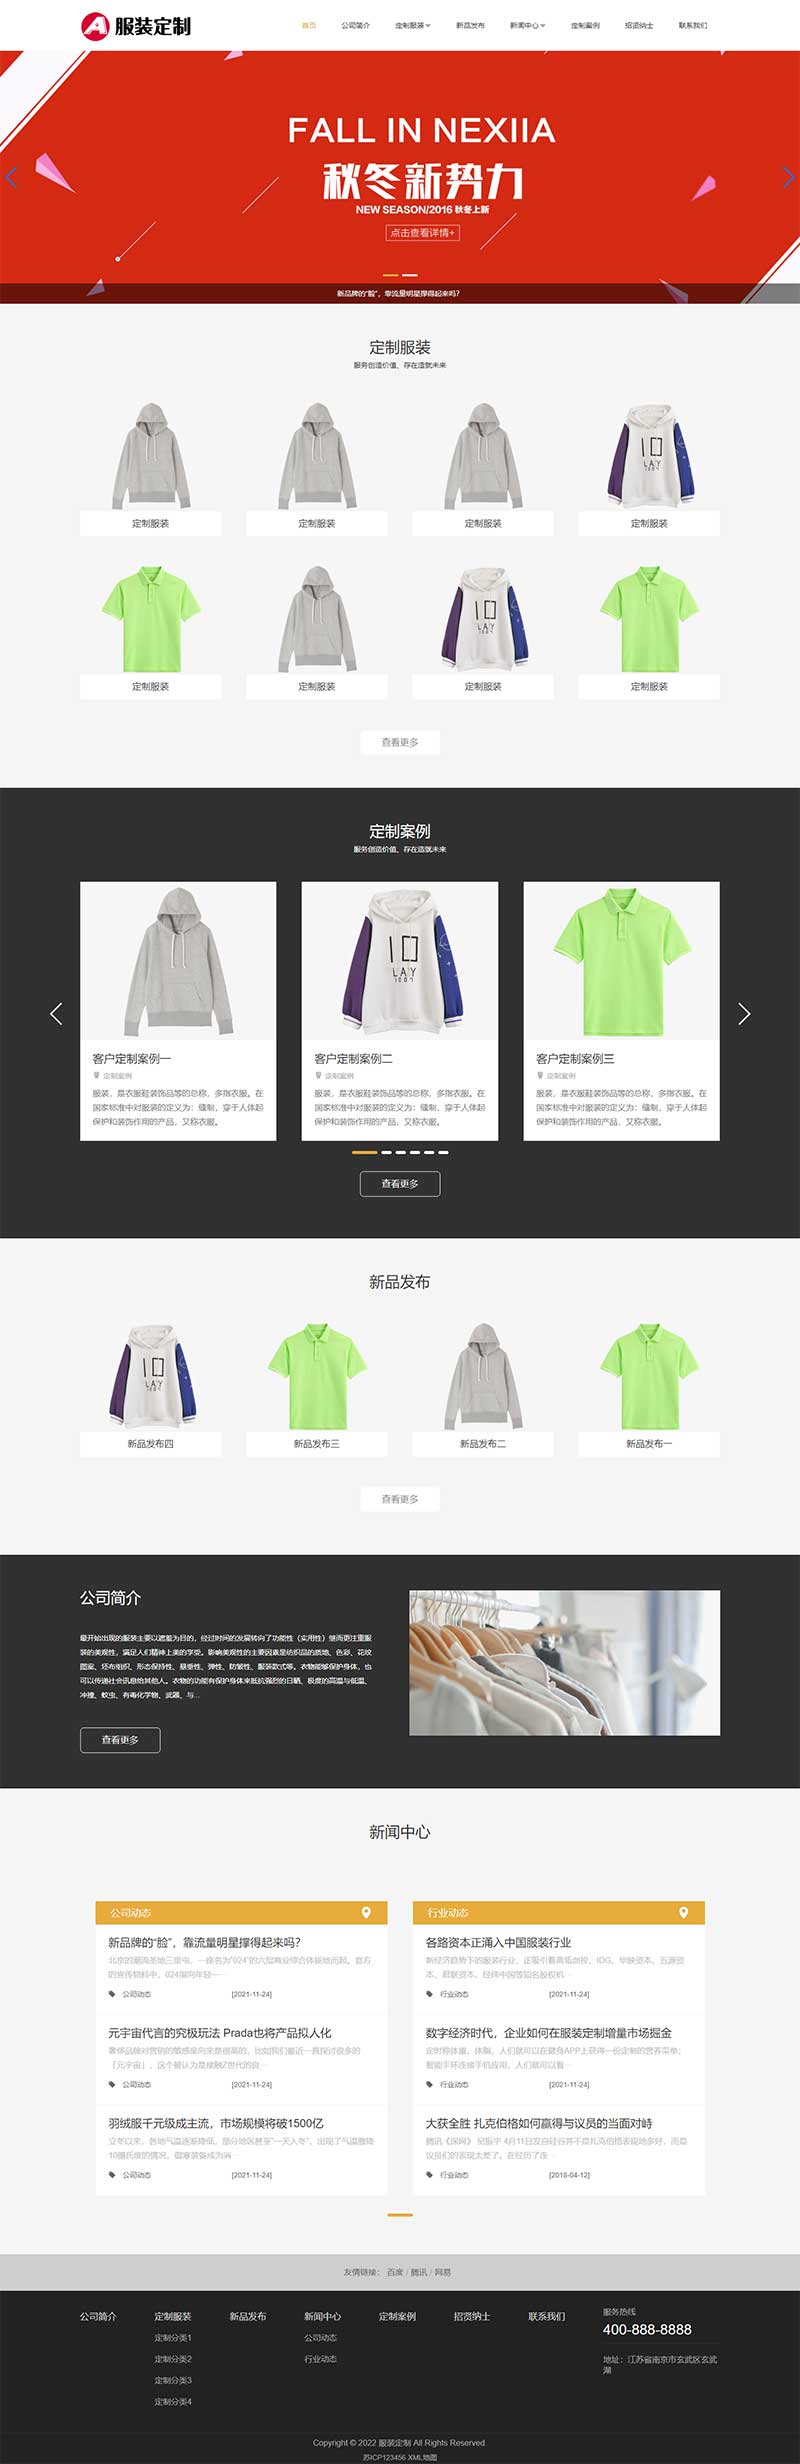 (自适应移动端)html5响应式服装设计服装定制服装公司网站电脑端模板展示图片